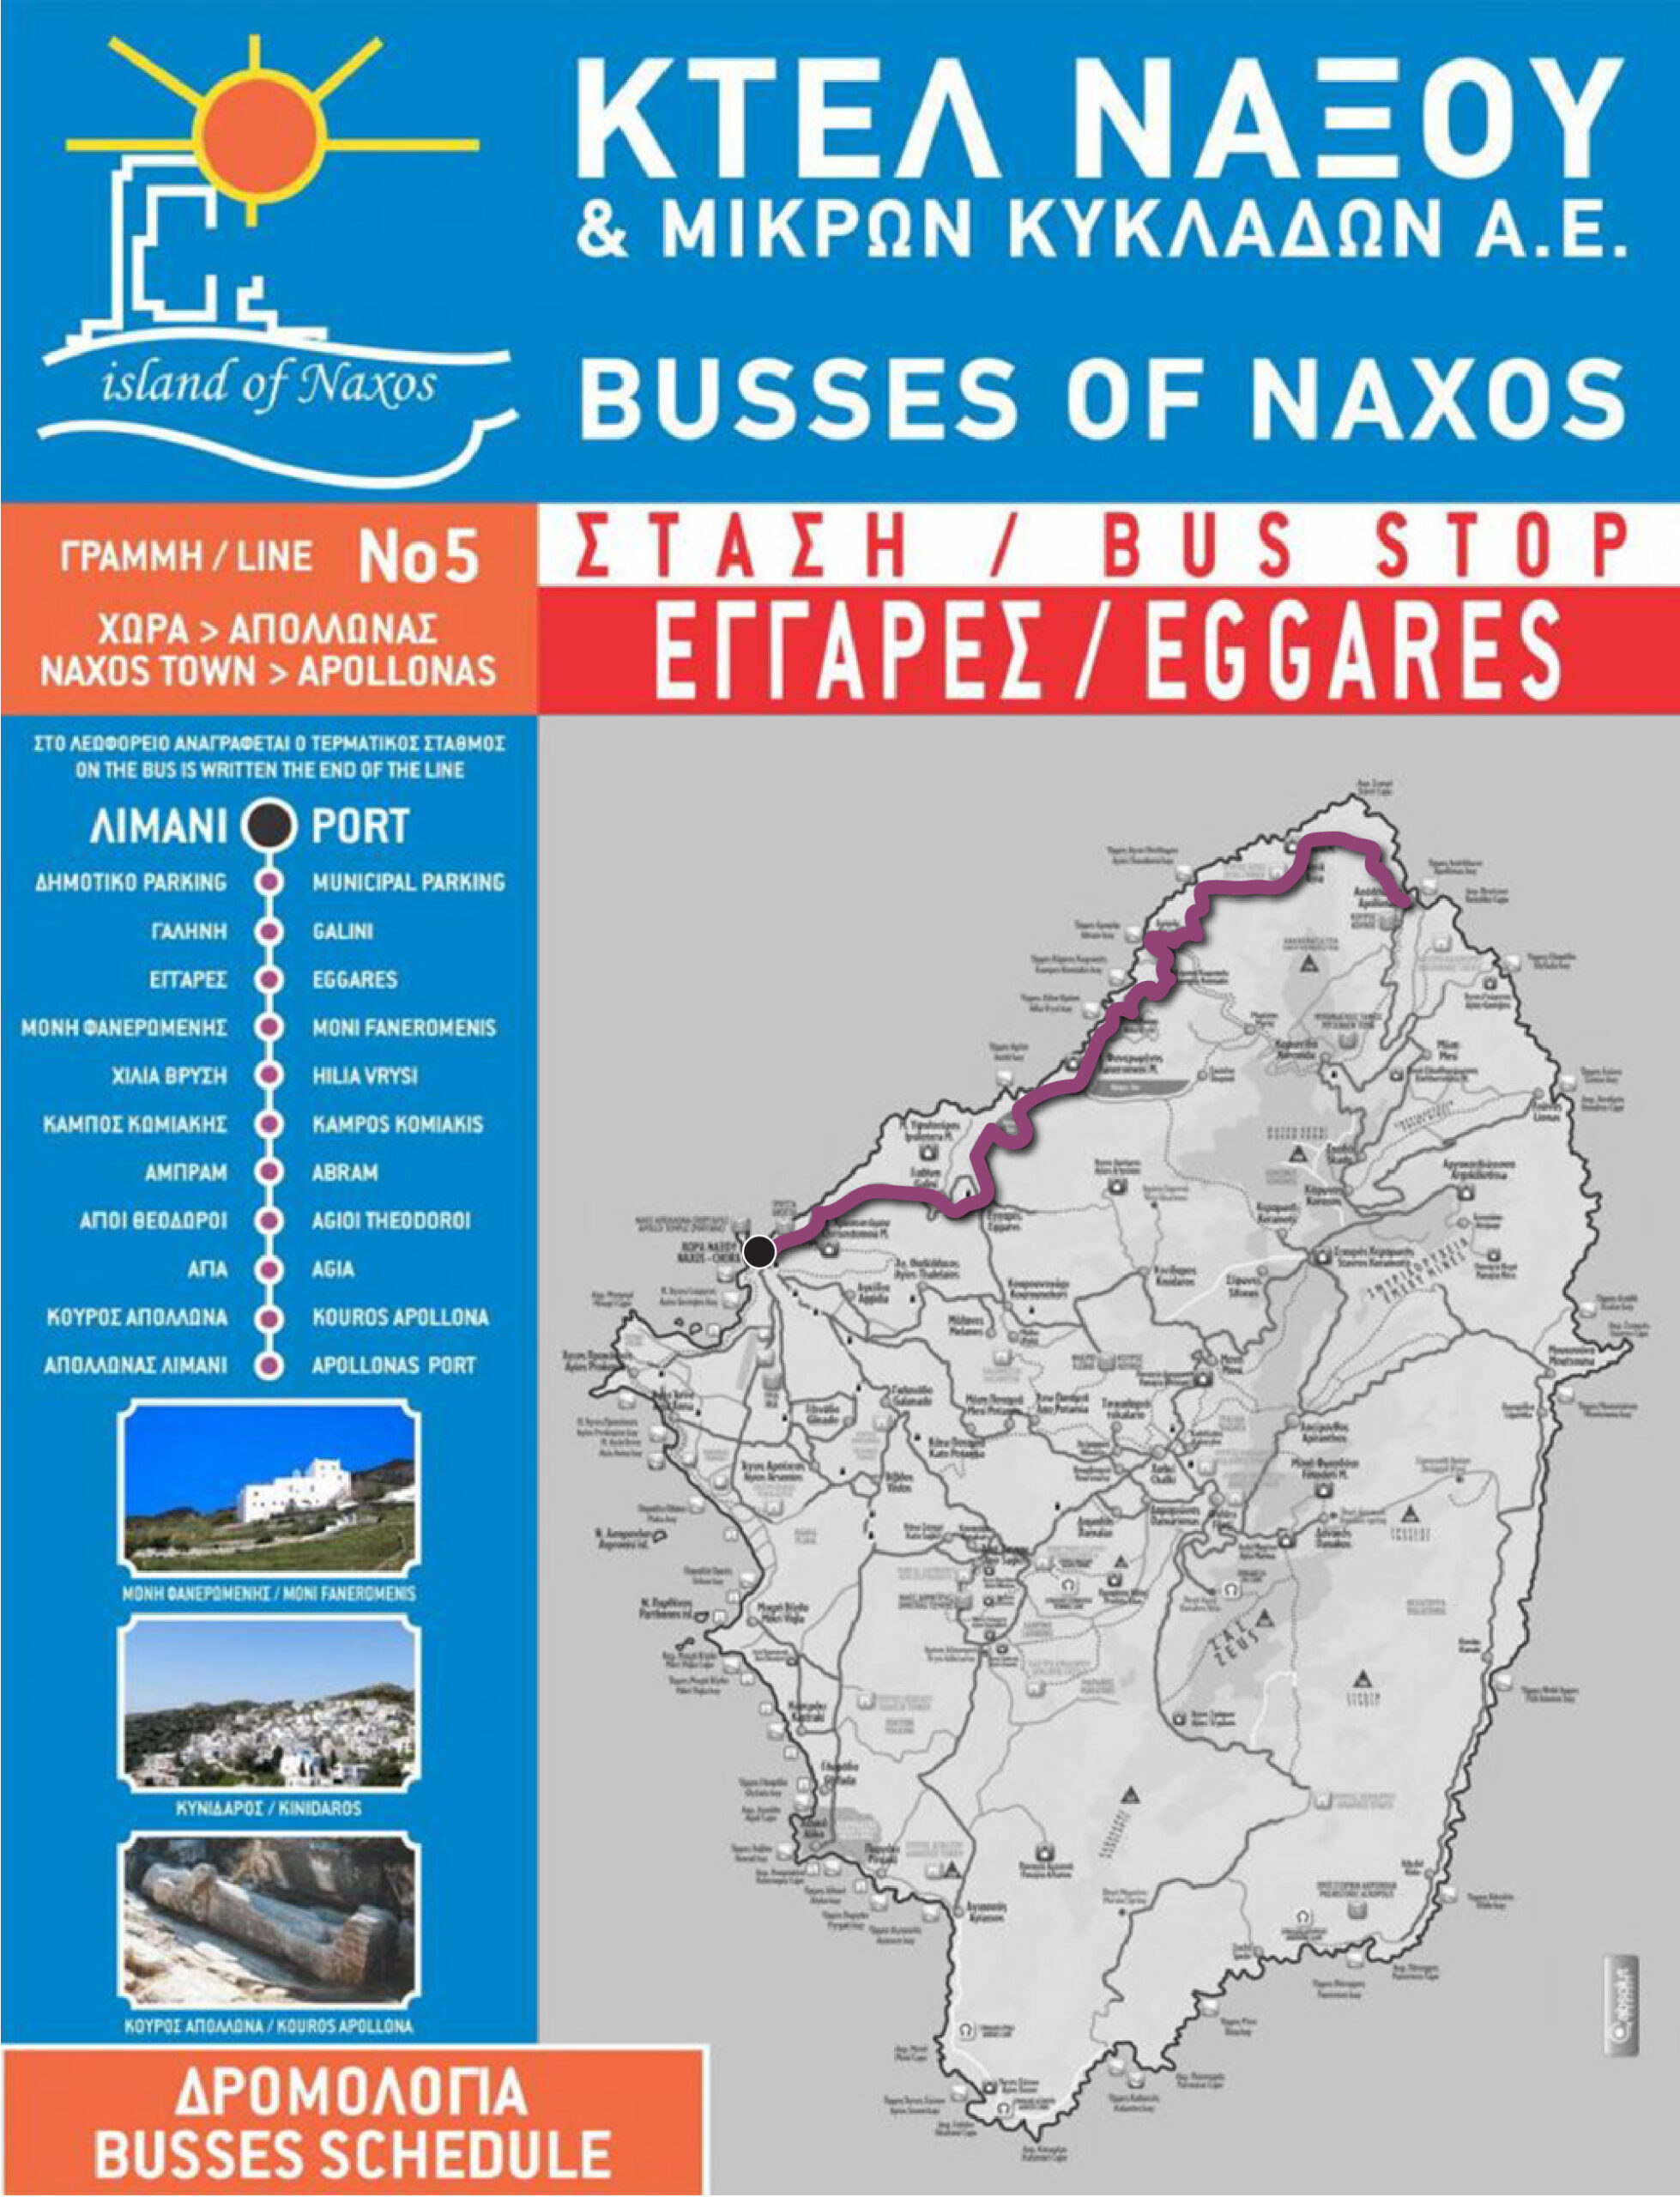 Naxos bus route #5.